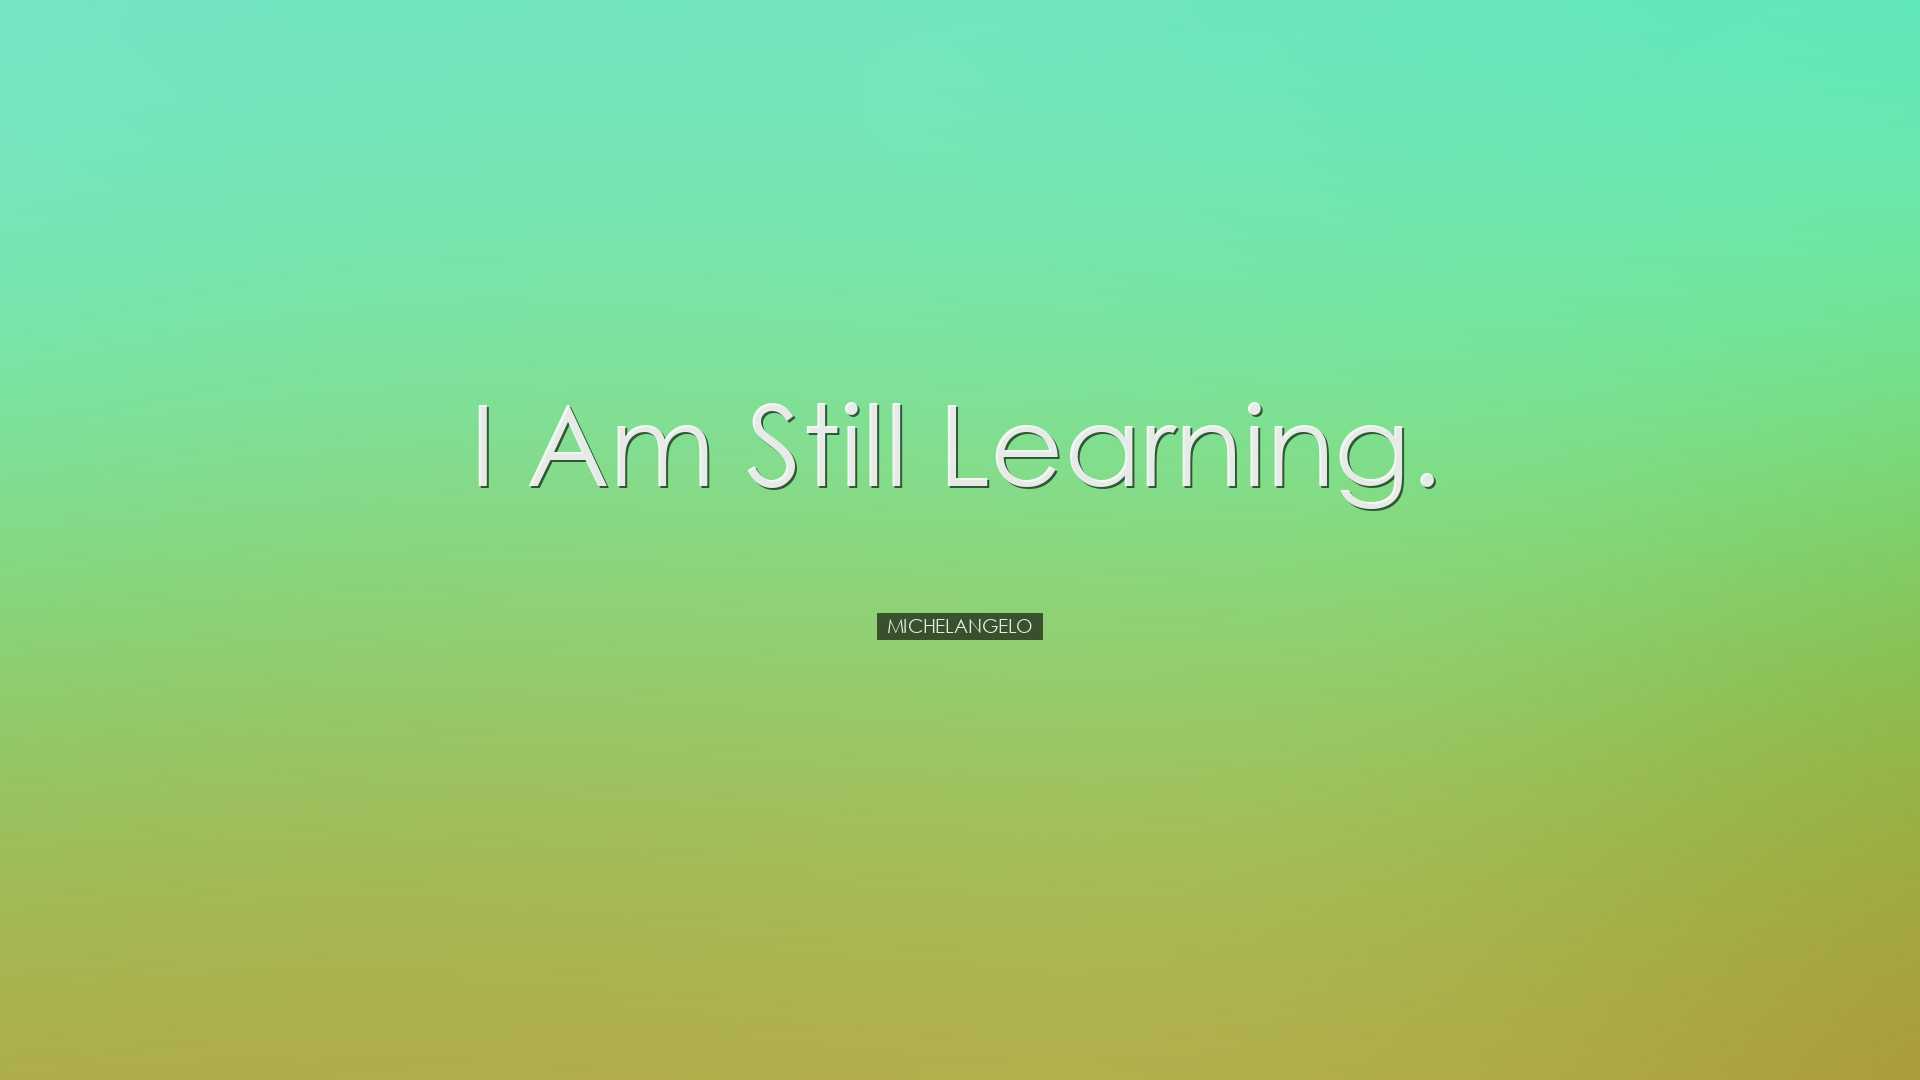 I am still learning. - Michelangelo